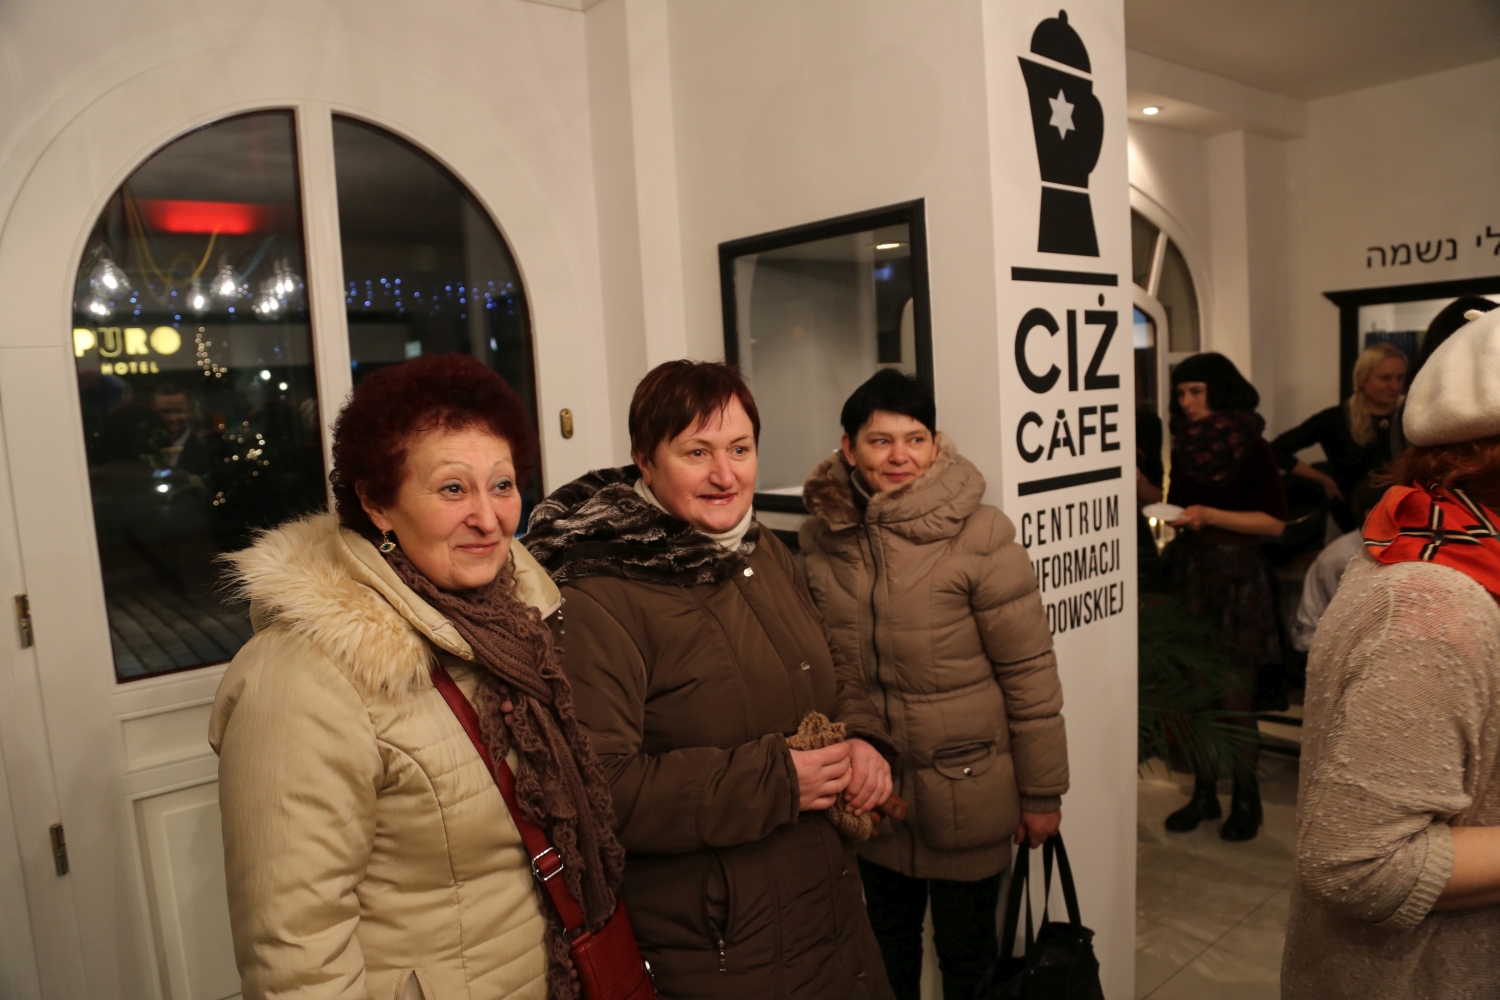 ciż-cafe-centrum-informacji-żydowskiej-chidusz-gmina-żydowska-wrocław-jewish-community-of-wroclaw-kosher-koszerna-kawiarnia (54)